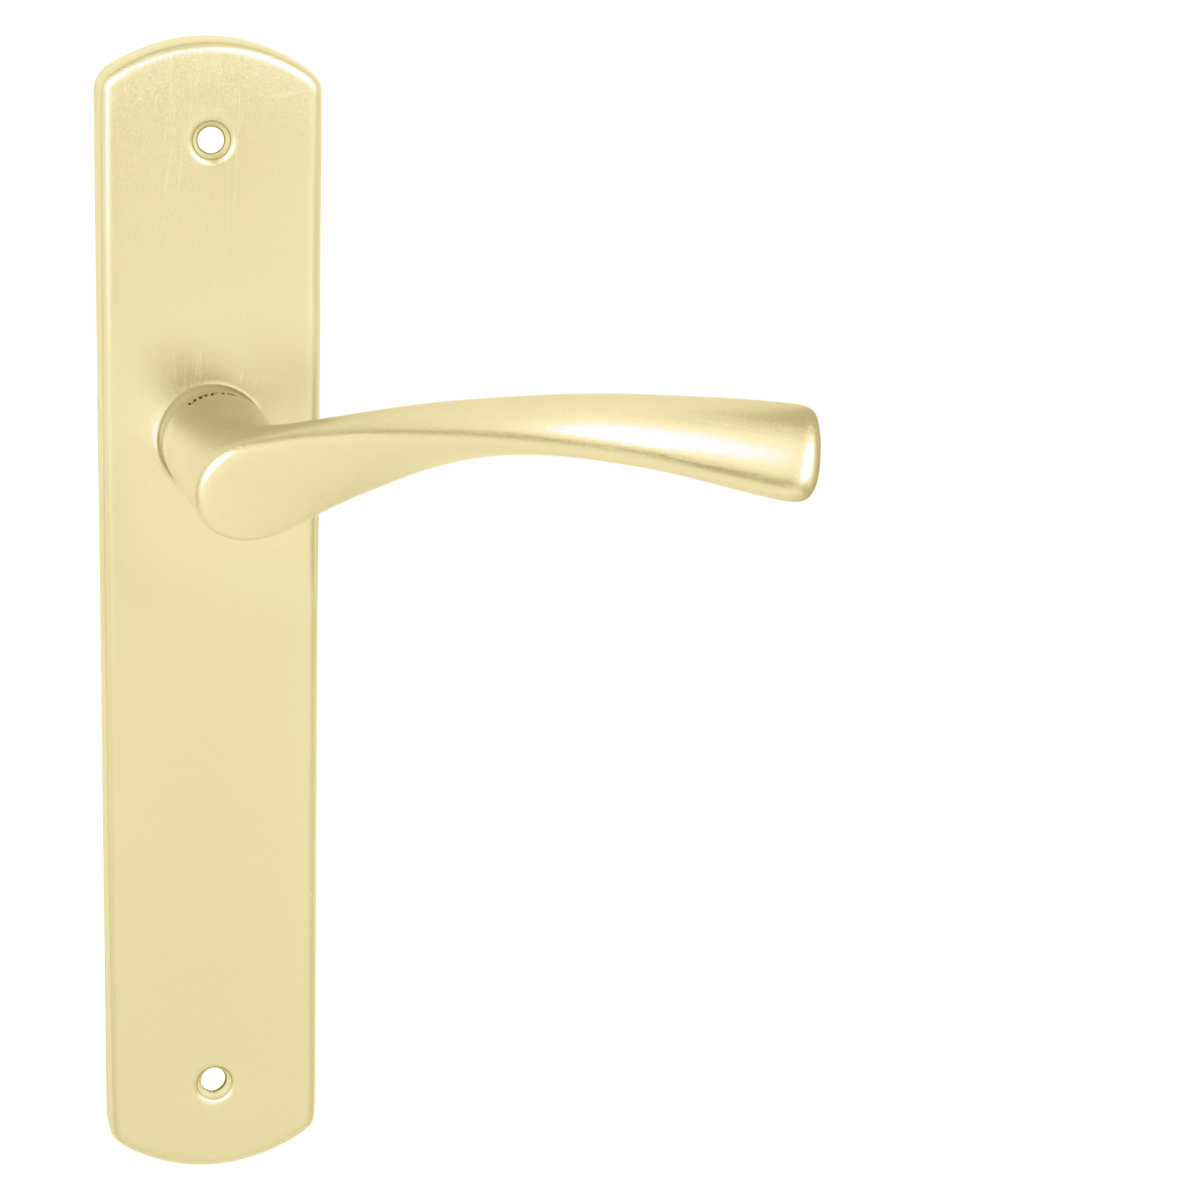 E-shop UC - TORNADO - VS (E) BB otvor pre kľúč, 90 mm, kľučka/kľučka